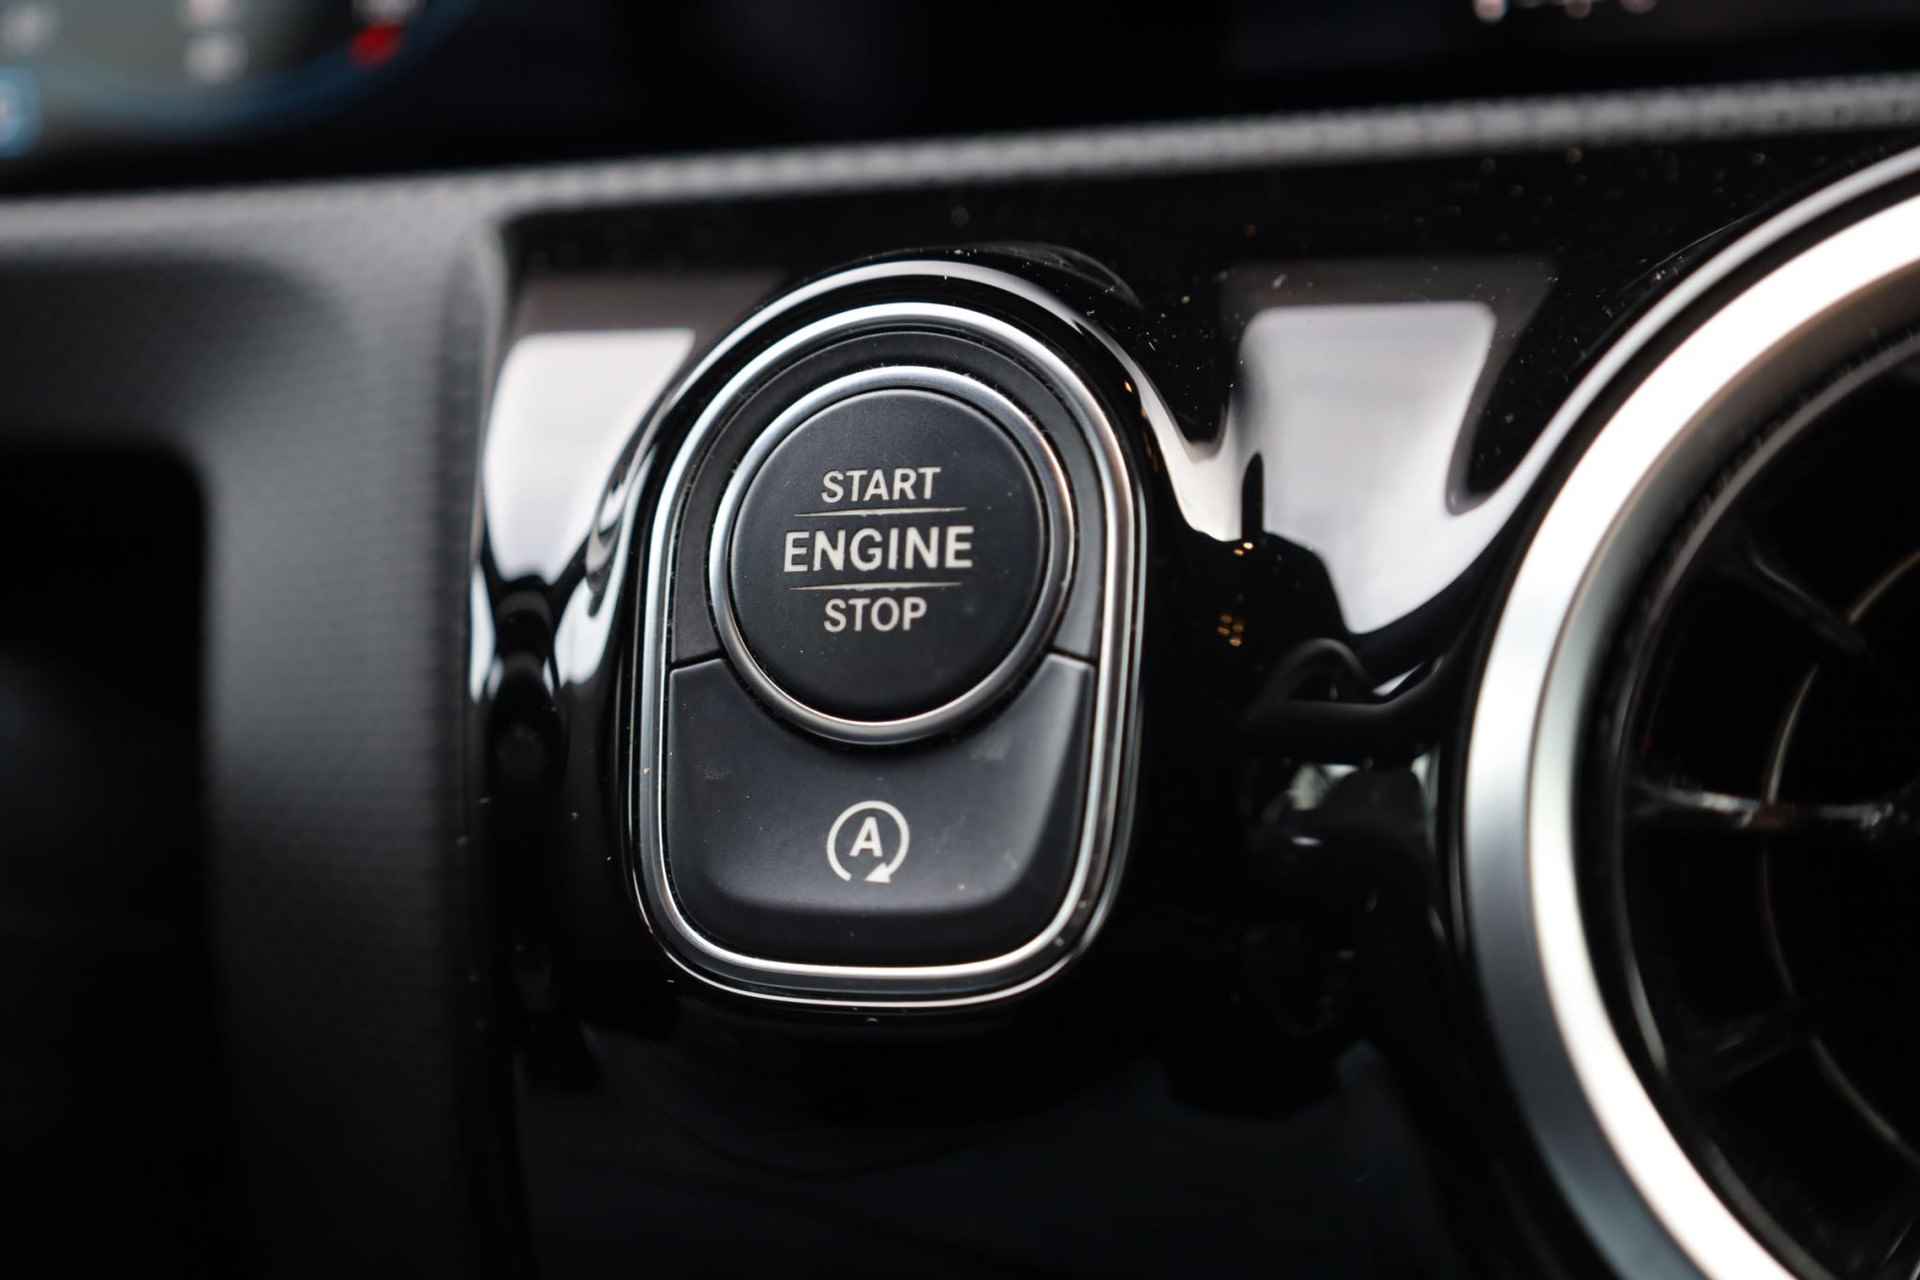 Mercedes-Benz A-klasse 200 Business Solution AMG 120KW/163PK automaat, Leder / alcantara, winterset LMV digitaal dashboard, navigatie, LED verlichting voor en achter, 18" LMV, stoelverwarming, parkeersensoren voor en achter, AMG bumpers - 20/44